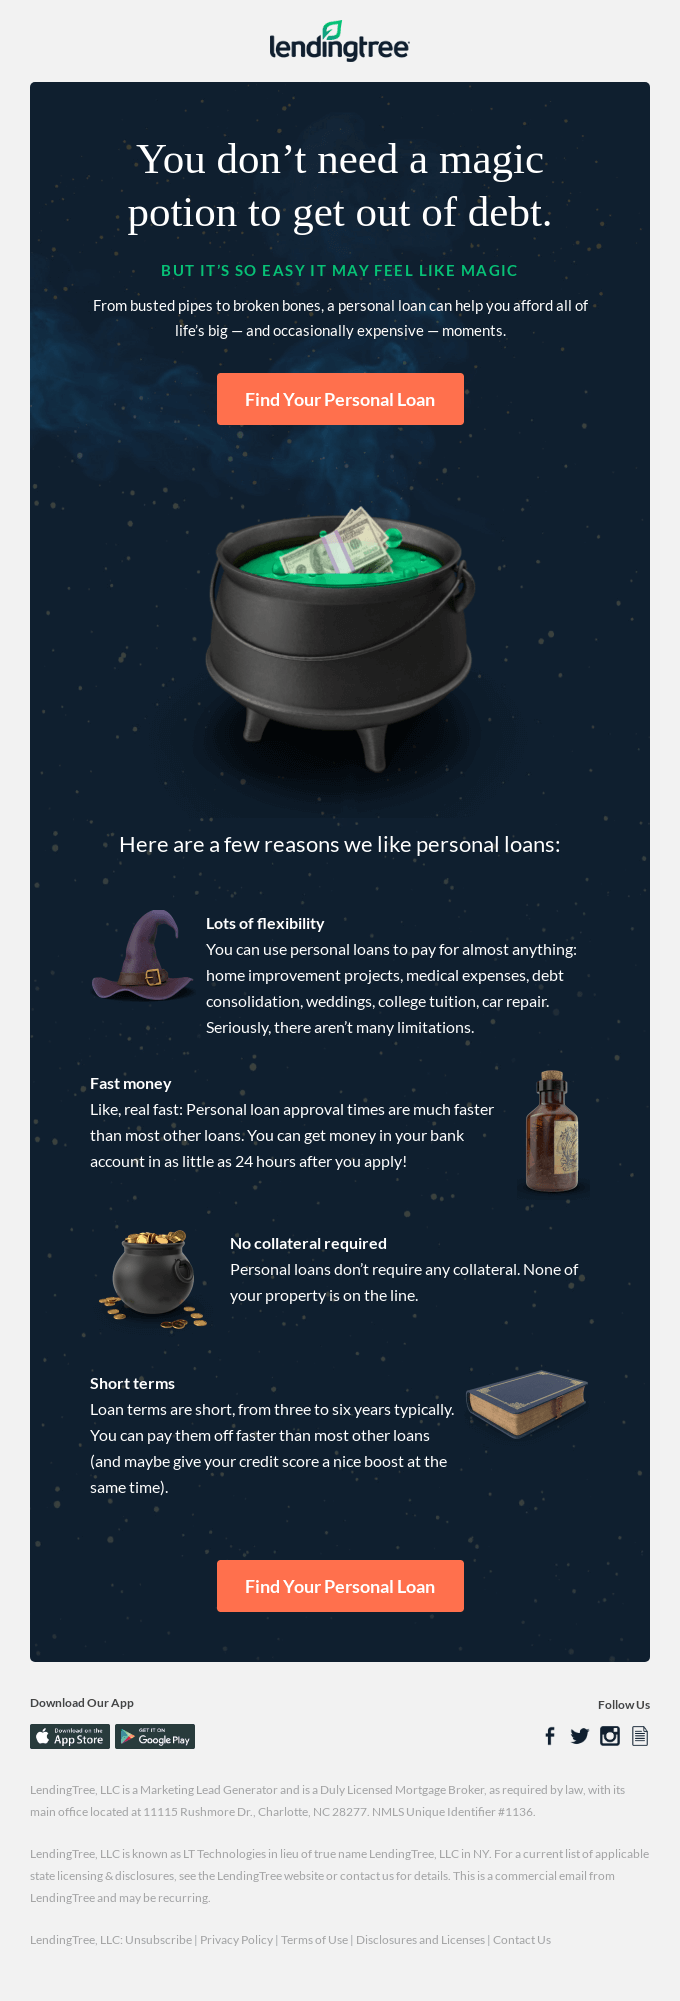 Campaña de marketing de LendingTree para Halloween